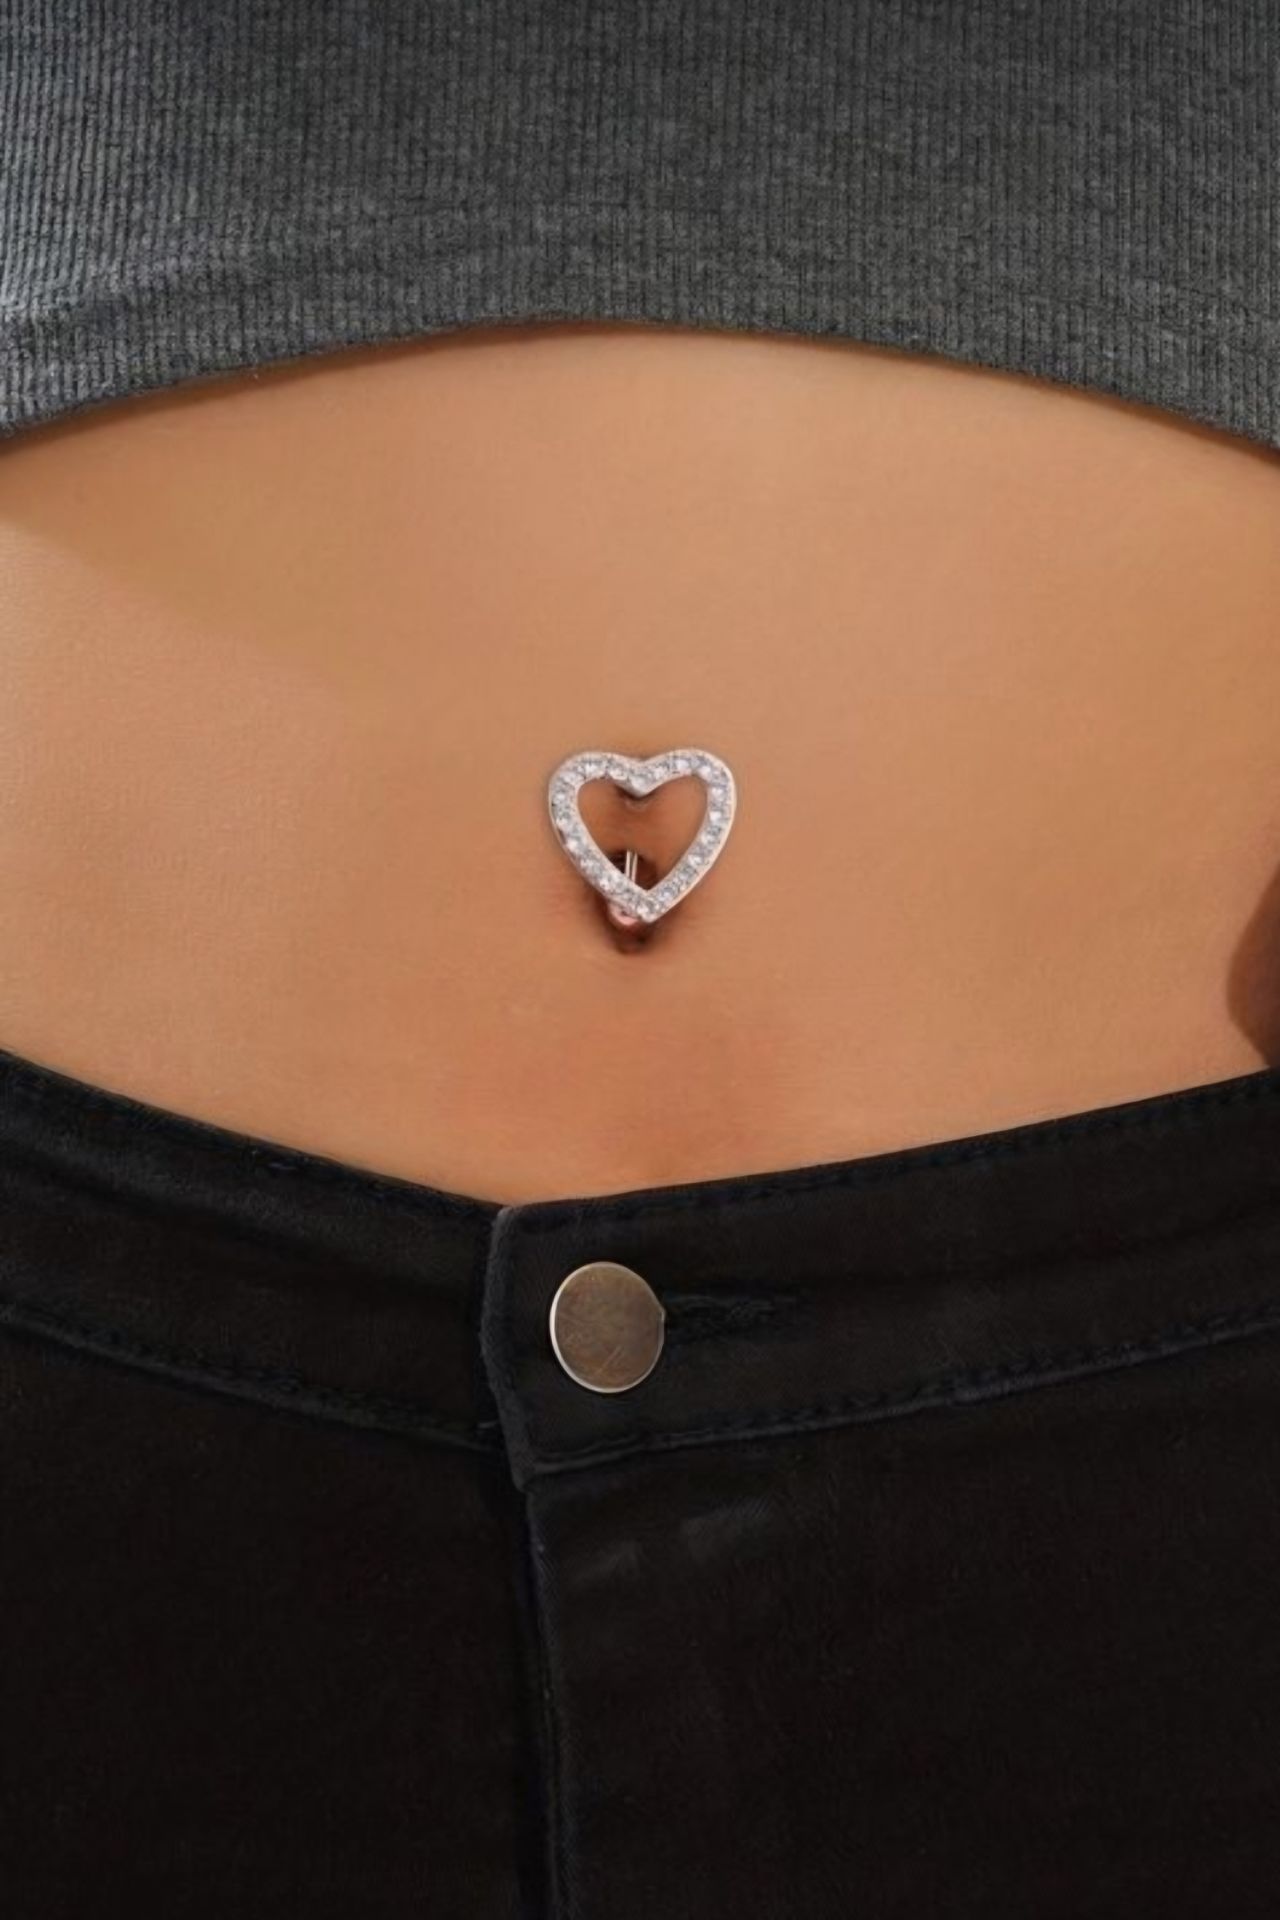 Kalp Model Göbek Piercingi Gümüş Renkli